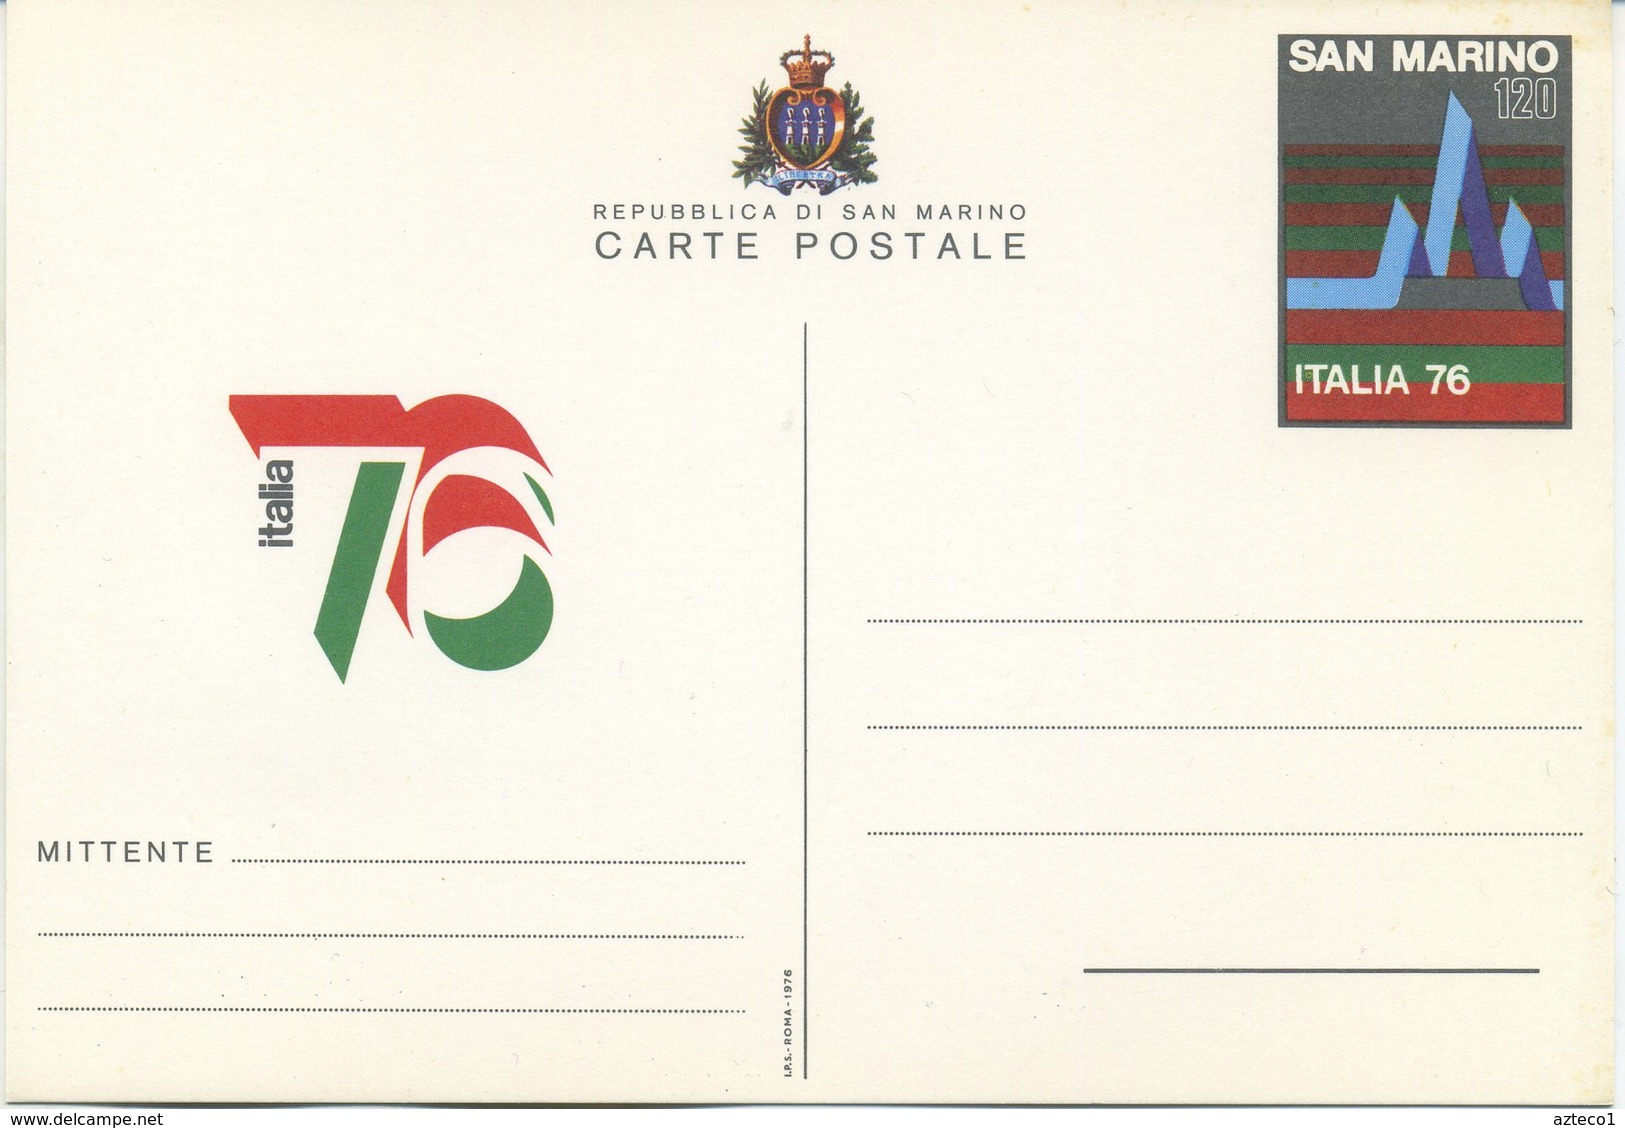 SAN MARINO - CARTOLINA POSTALE  1976 - ESPOSIZIONE FILATELICA ITALIA 76 - Interi Postali